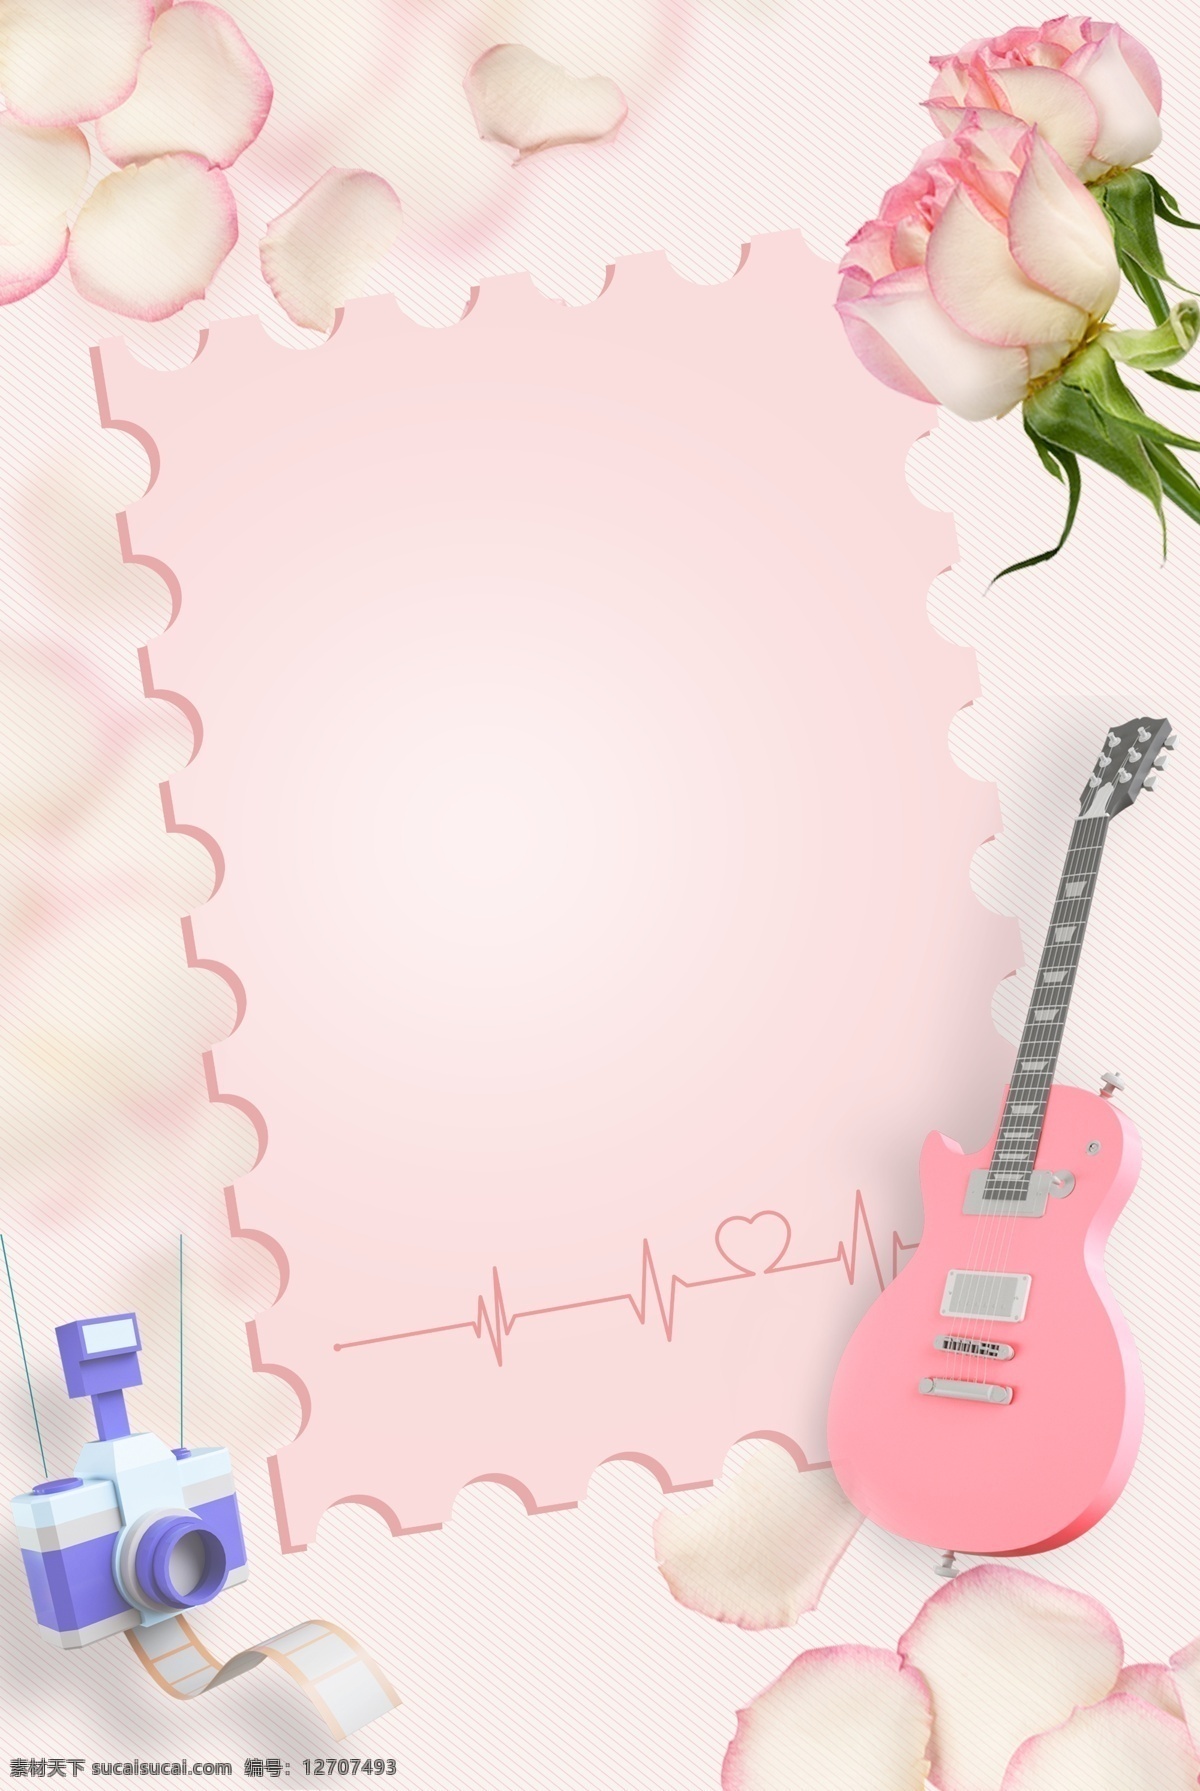 粉色 信纸 花朵 背景 图 粉红玫瑰 粉色花朵 花瓣背景 吉他 3d立体元素 相机 心跳 唯美520 520表白节